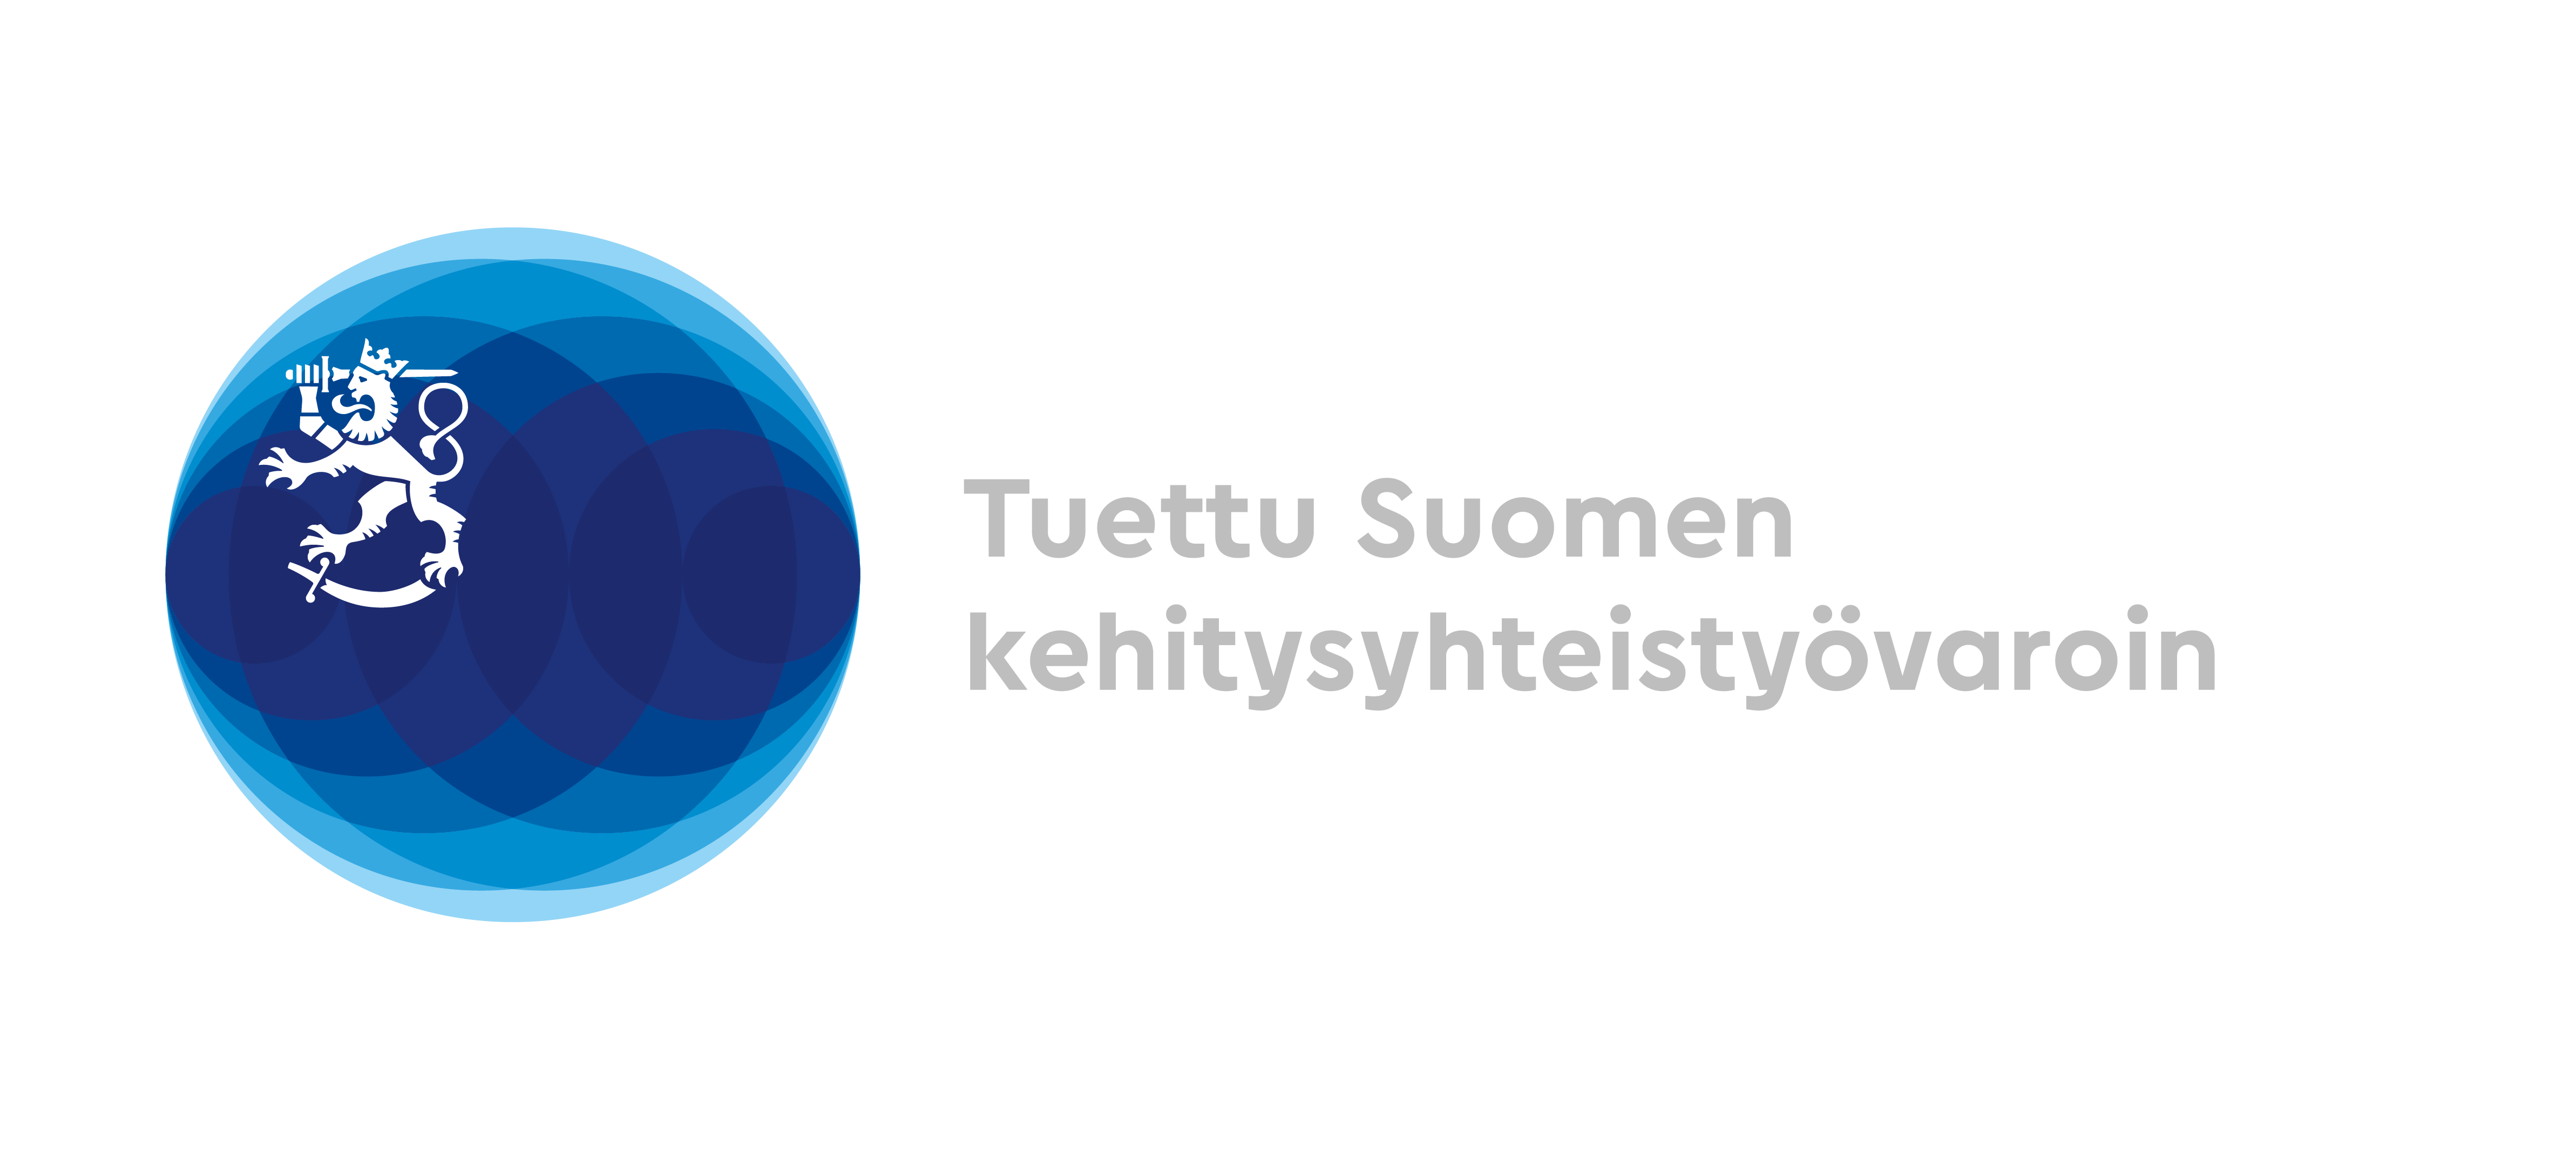 Suomen ulkoministeriön logo, jossa on teksti Tuettu Suomen kehitysyhteistyövaroin. Interpedian kehitysyhteistyöhankkeet saavat ulkoministeriön rahoitusta.